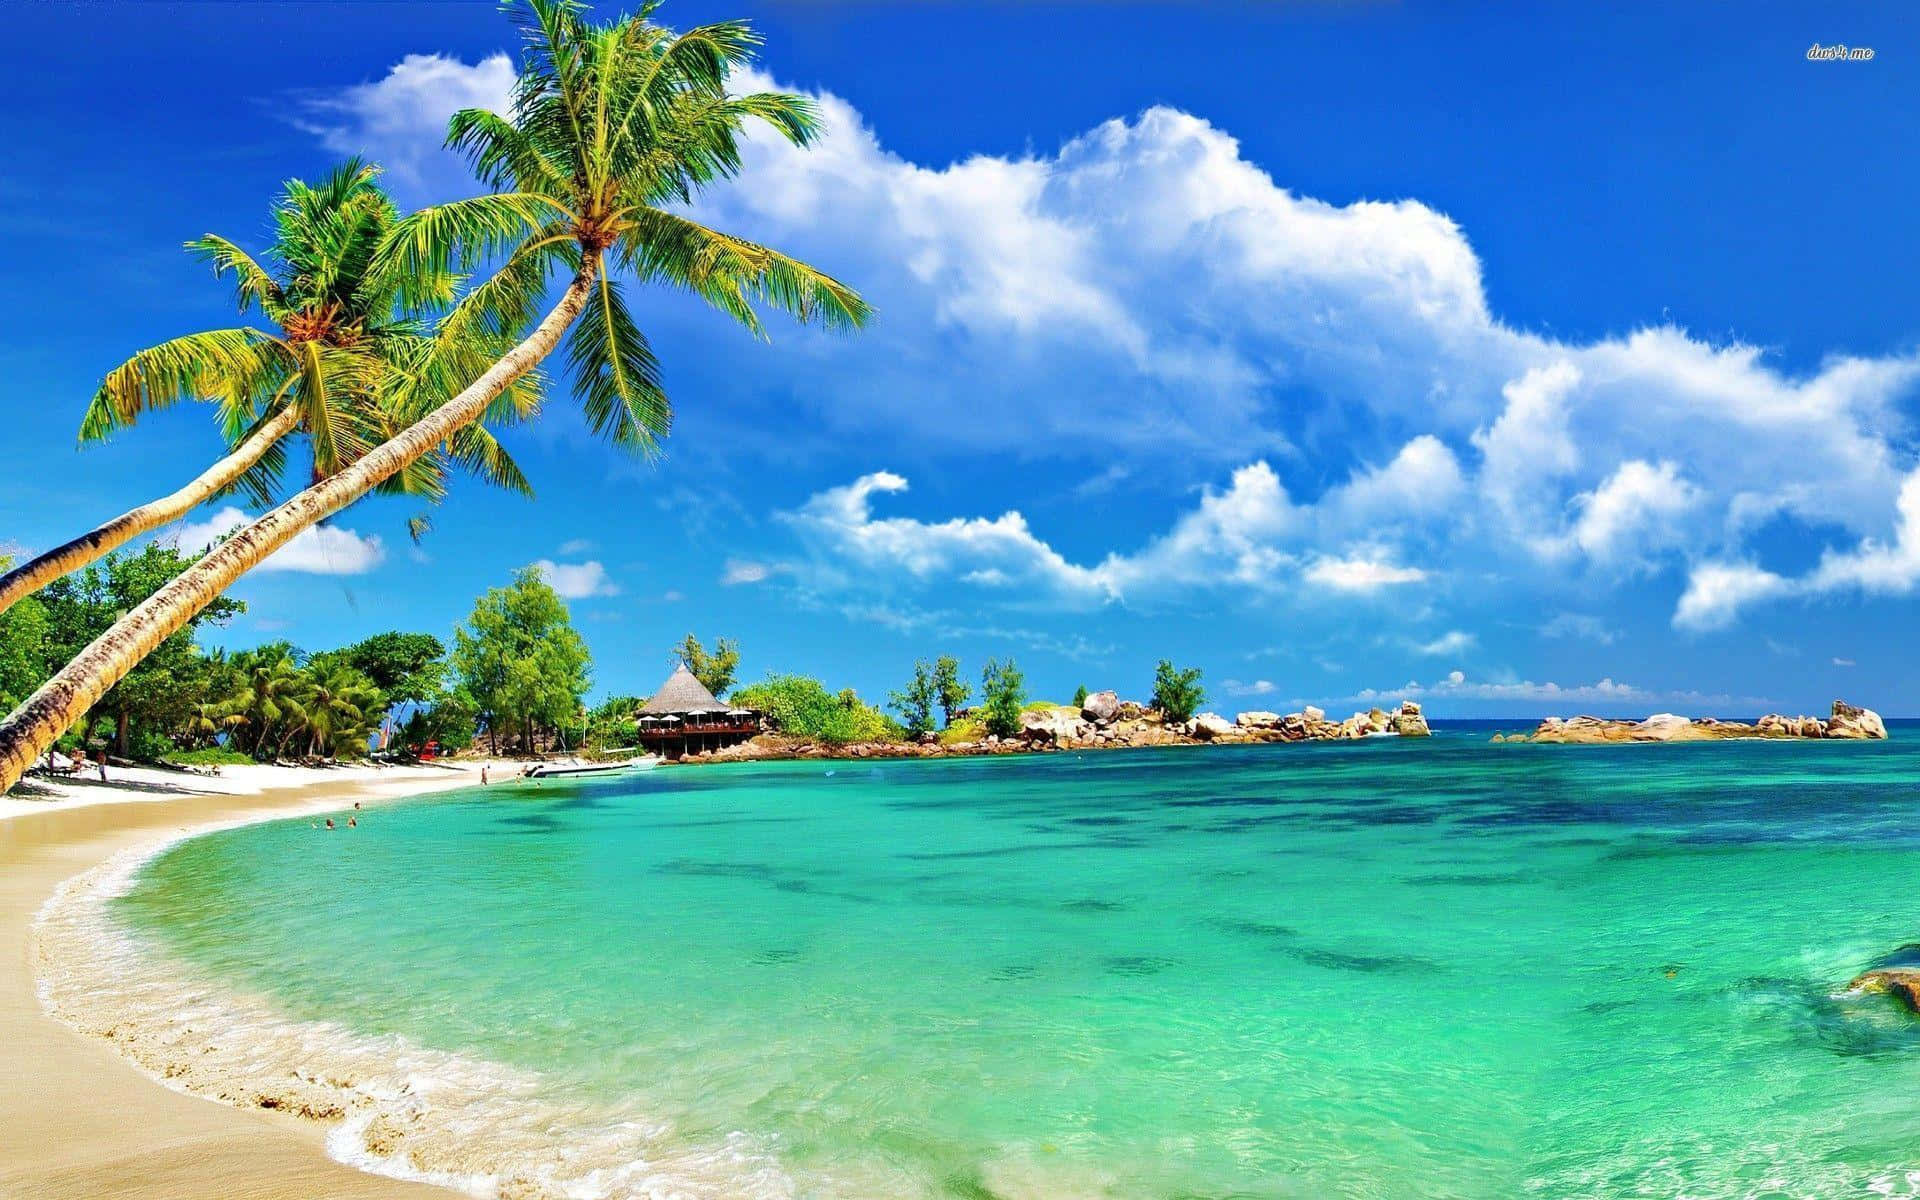 Nyd det smukke landskab af en tropisk strand. Wallpaper